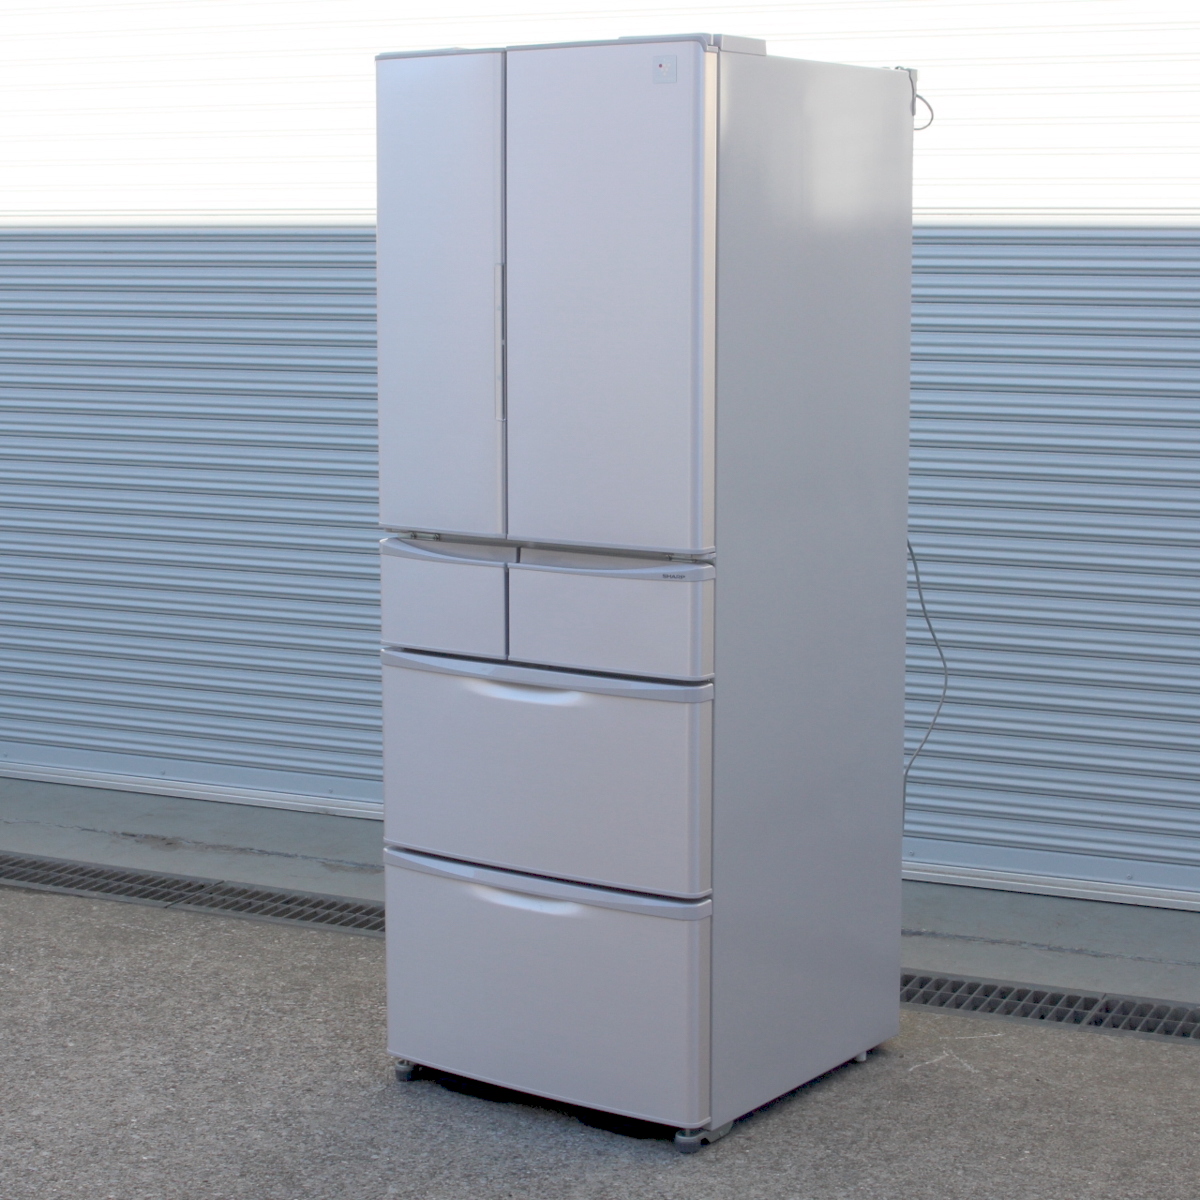 シャープ SJ-XF44Y-C 冷蔵庫 440L 6ドア フレンチドア プラズマクラスター搭載冷蔵庫 2015年製